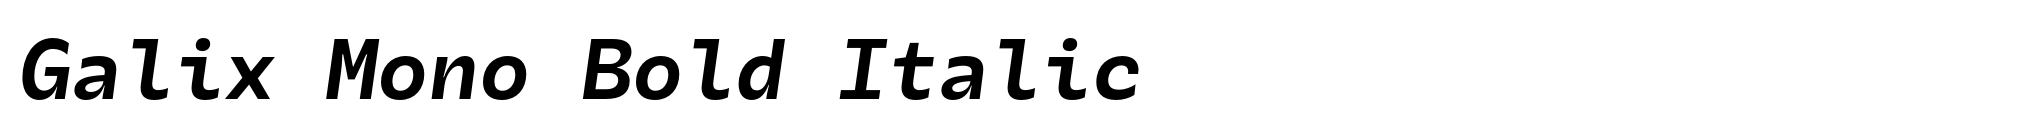 Galix Mono Bold Italic image